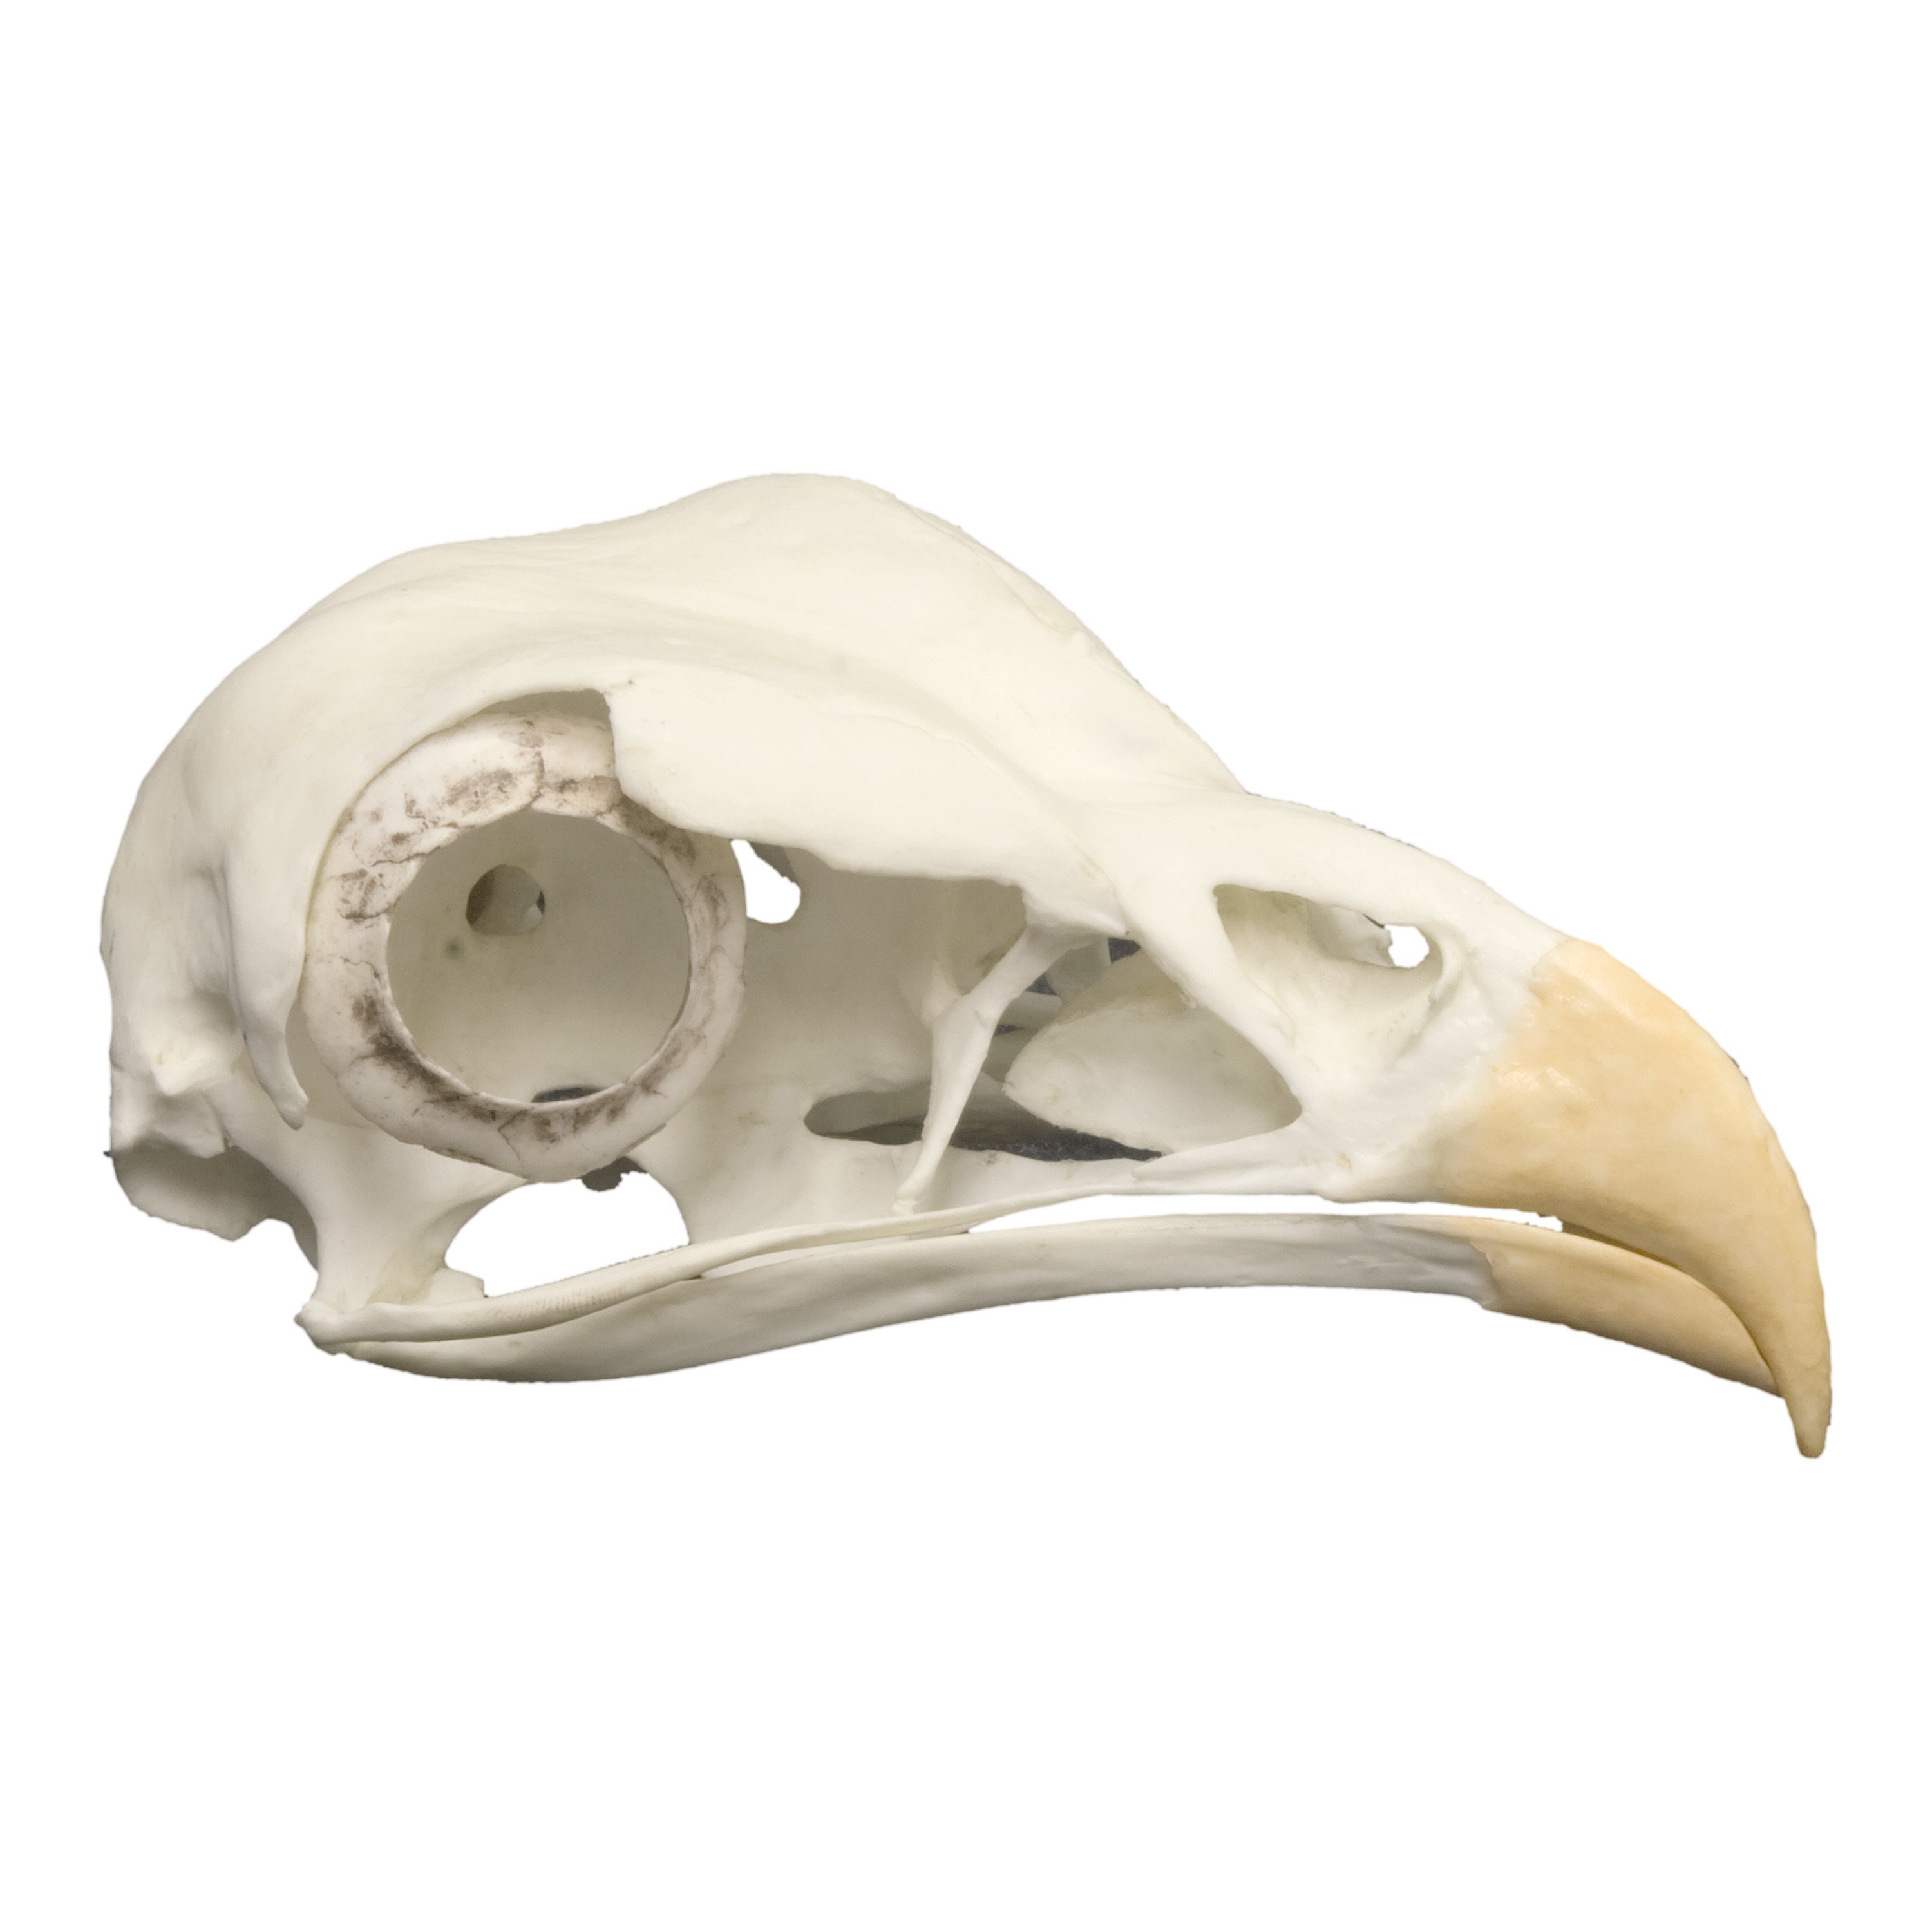 Replica Secretary Bird Skull For Sale – Skulls Unlimited ...